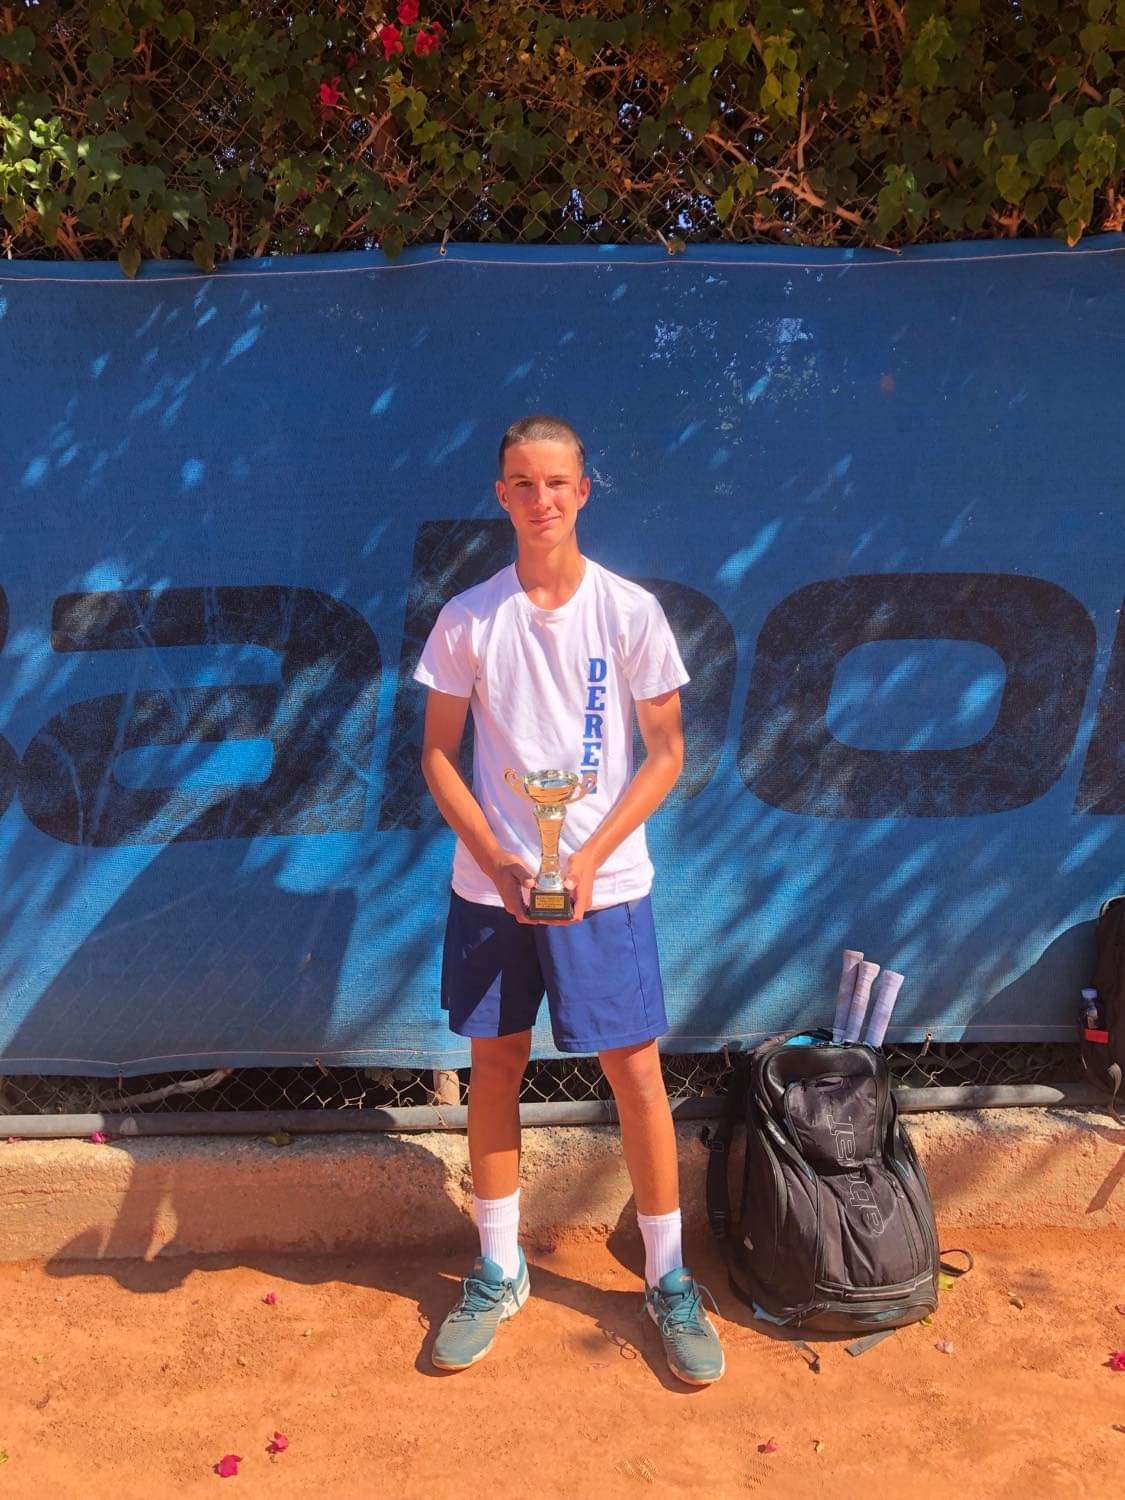 2η θέση στα μονά για την Deree Tennis Academy στο διεθνές τουρνουά της Τennis Europe U16 στην Κύπρο!